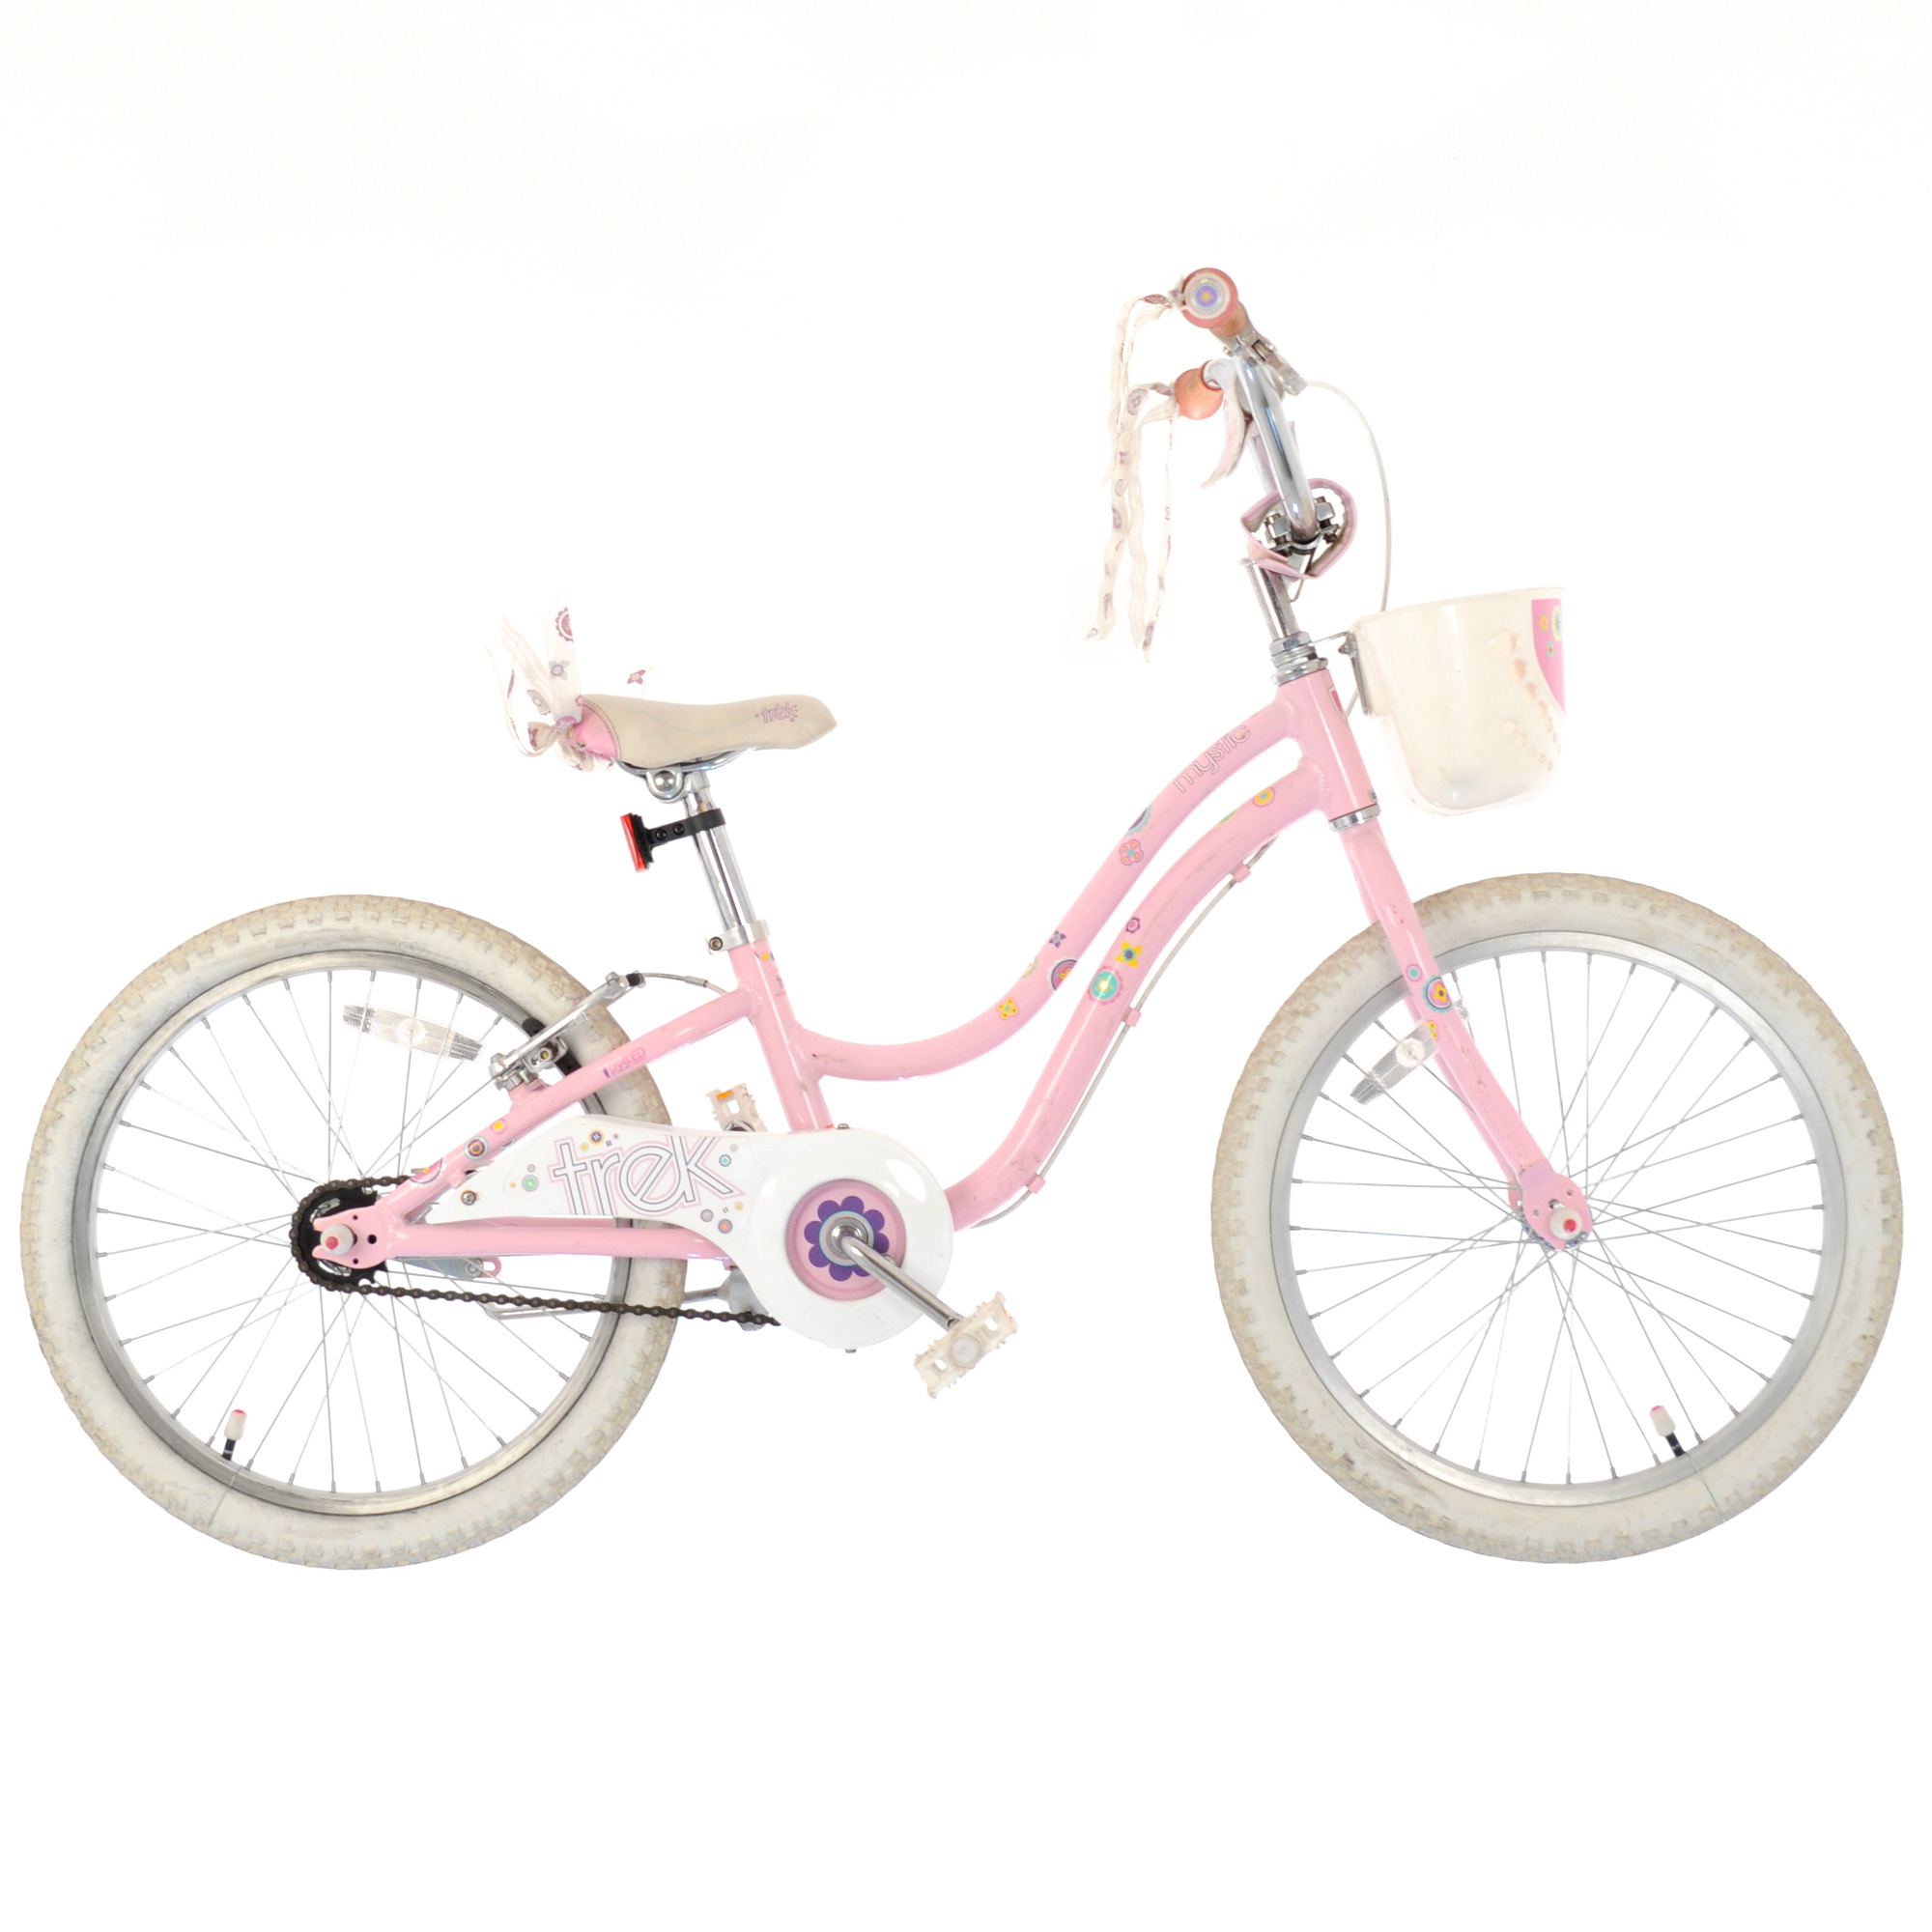 pink bike used